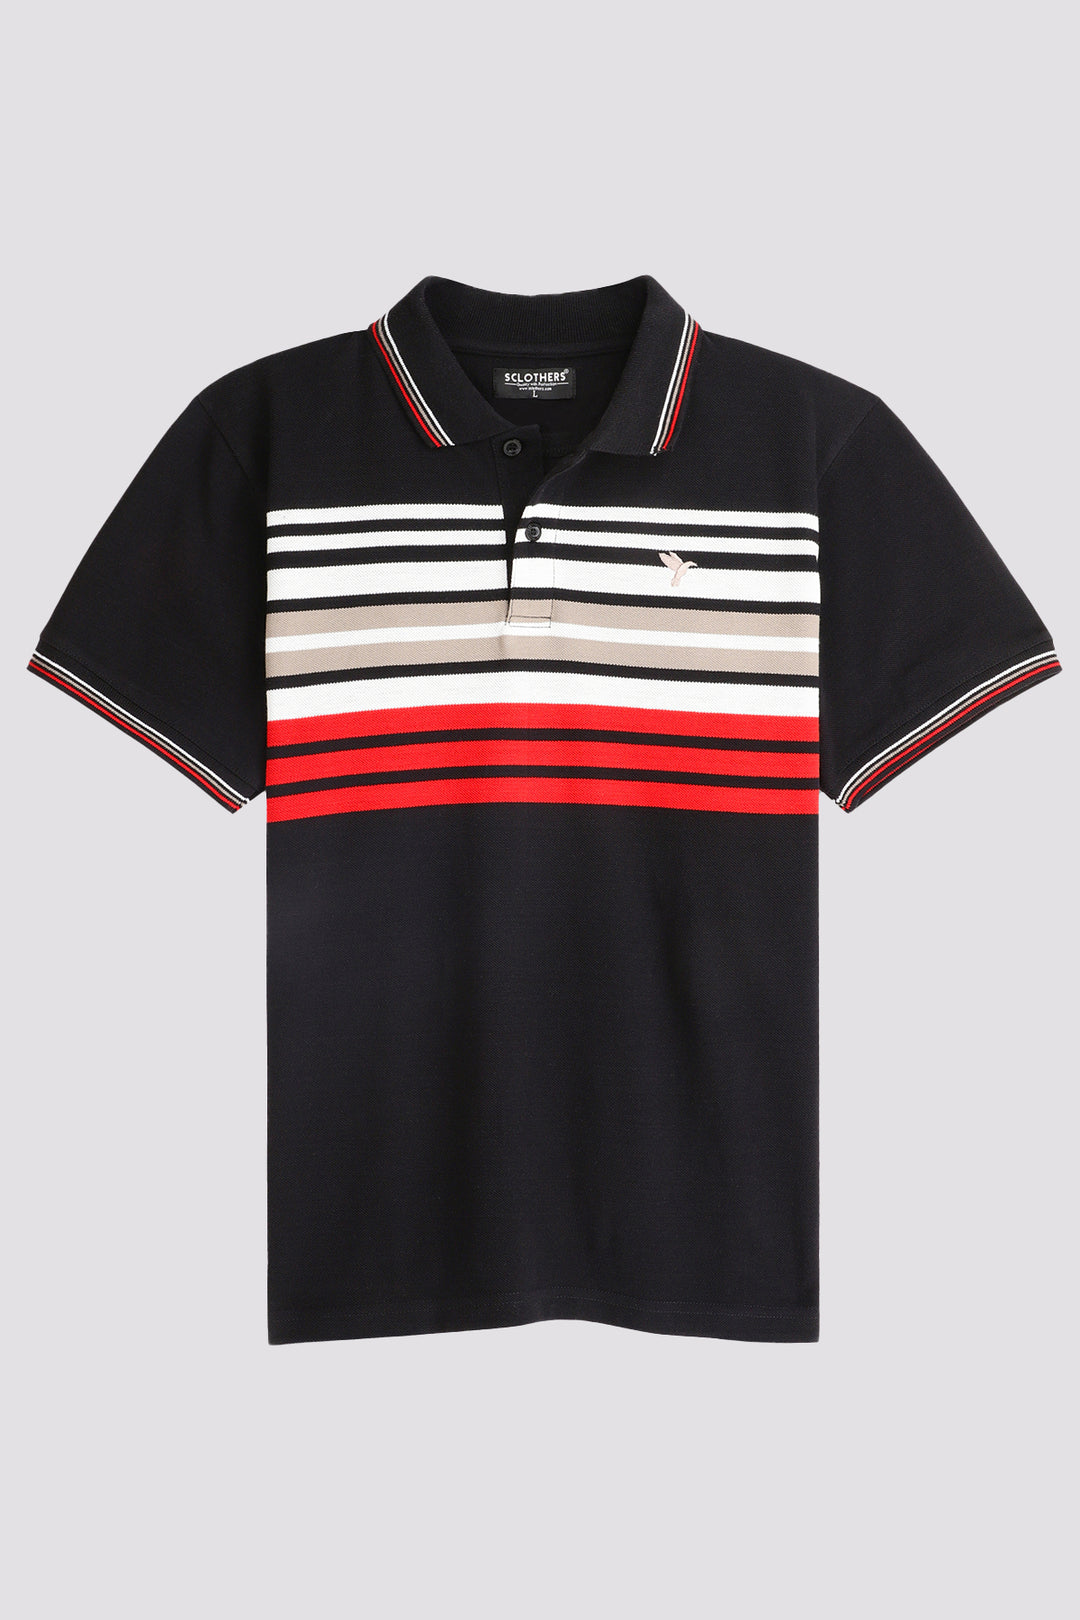 Black Multi-Striped Yarn Dyed Polo Shirt - A24 - MP0253R